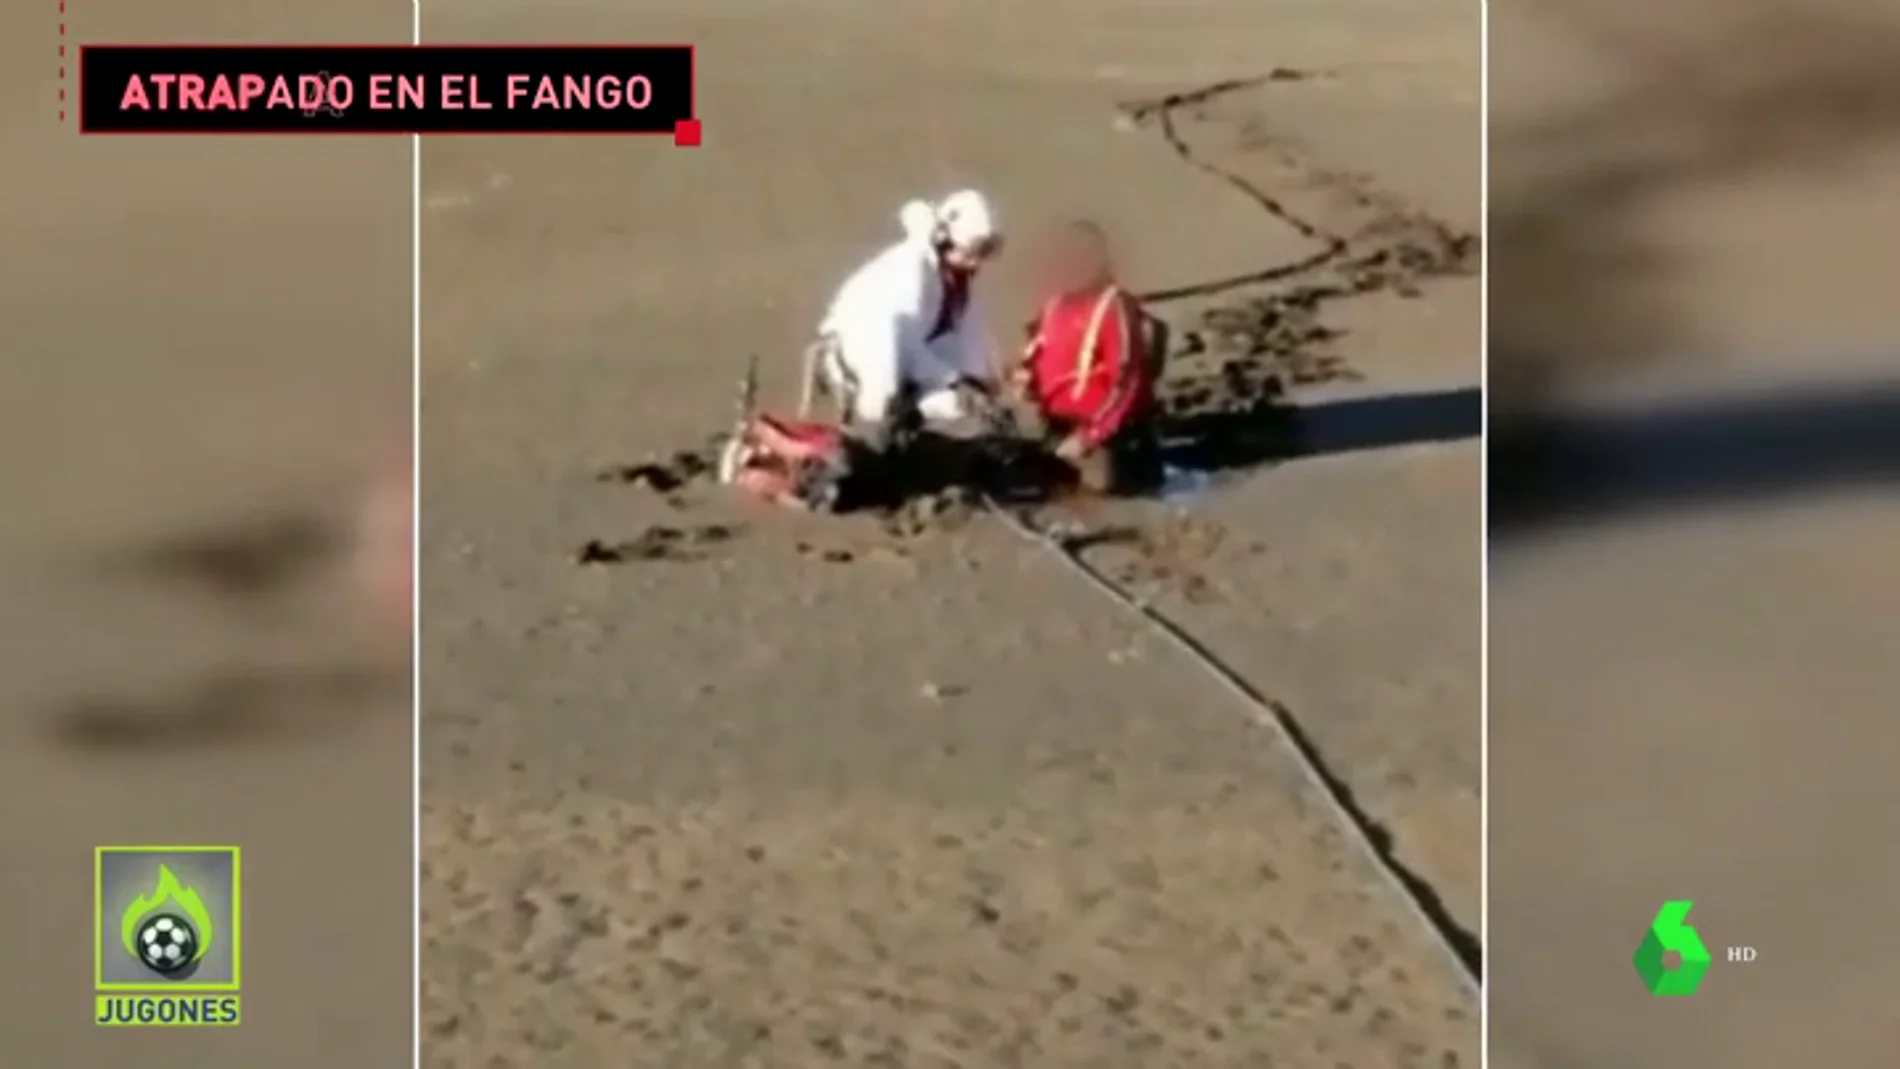 El espectacular rescate en helicóptero a un ciclista atrapado en el fango de un embalse